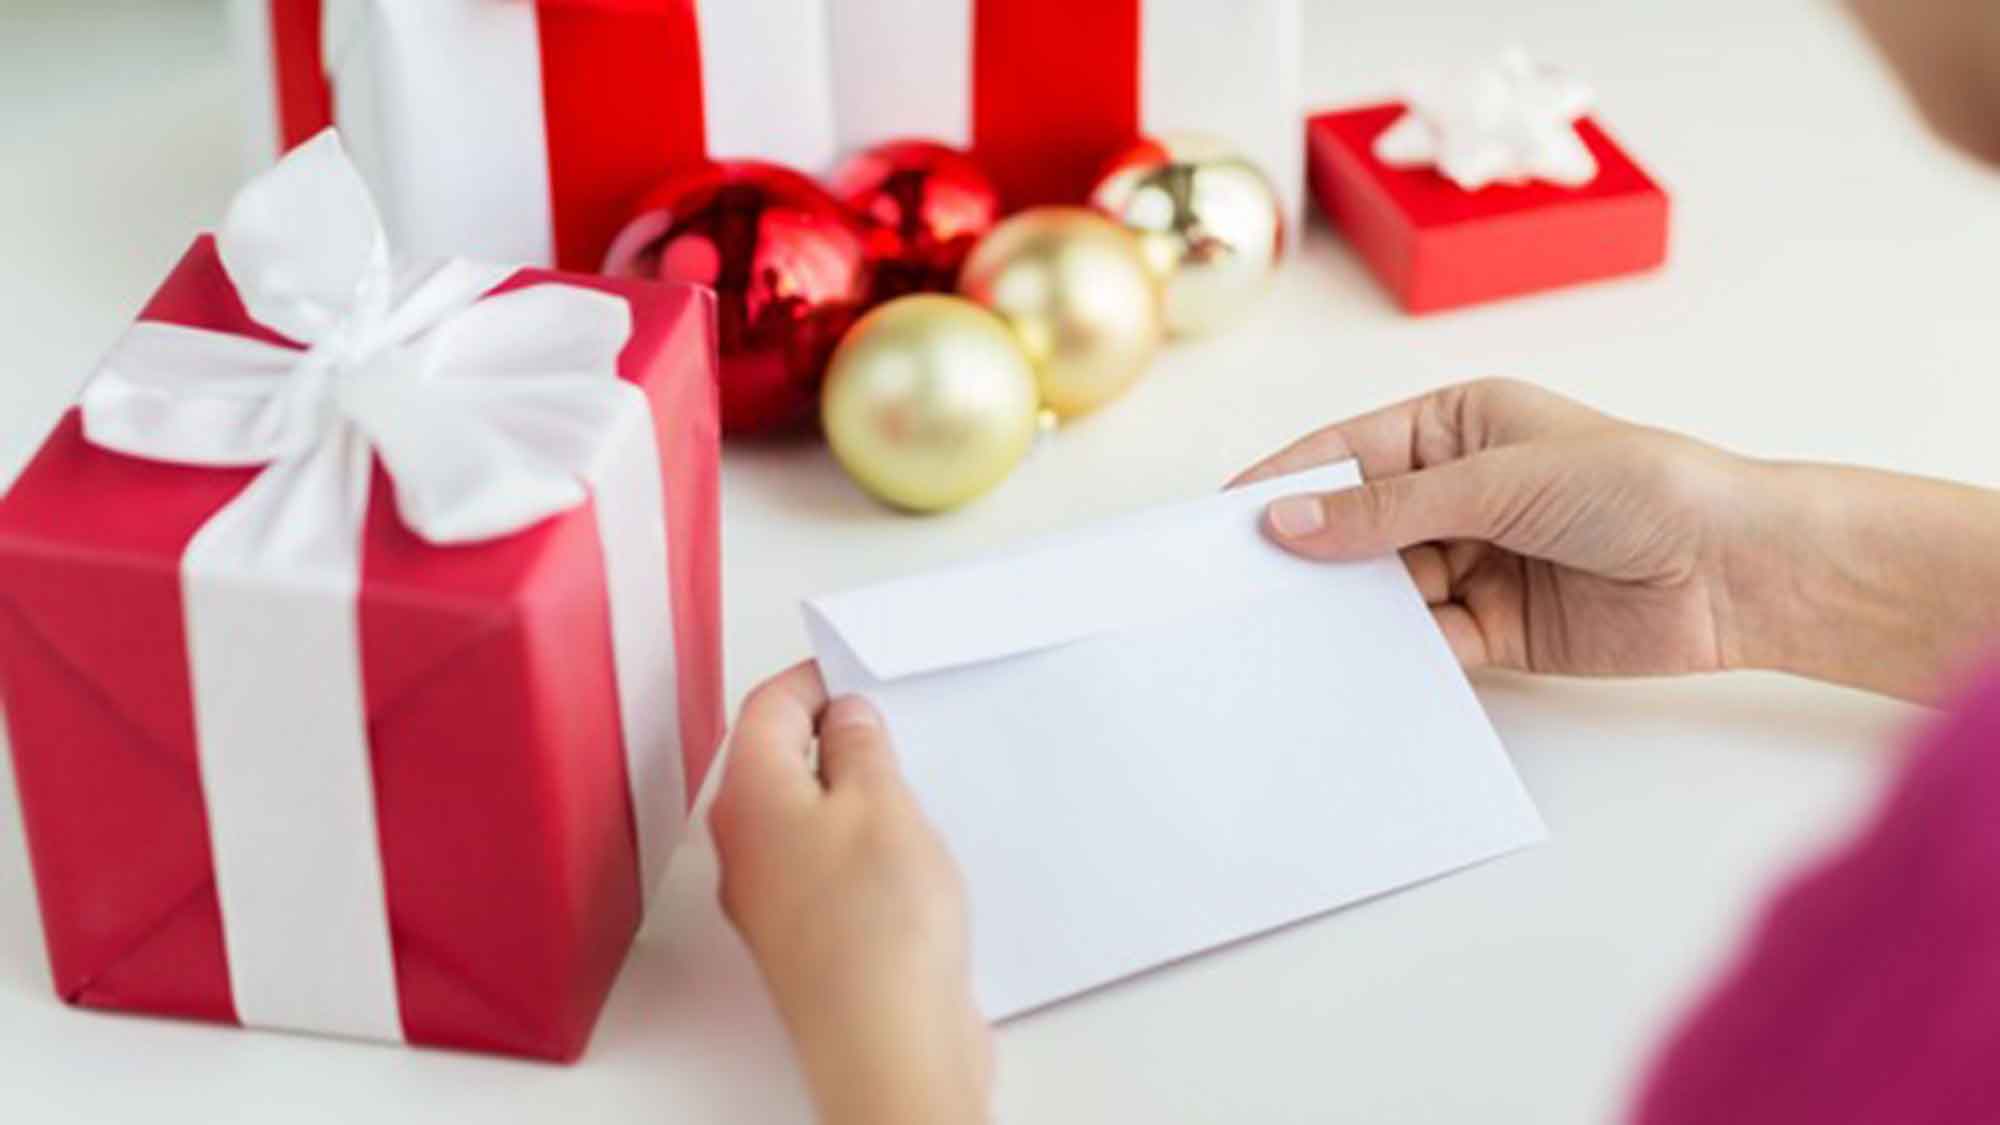 Verbraucherzentrale NRW: So klappt der Geschenkeversand vor Weihnachten